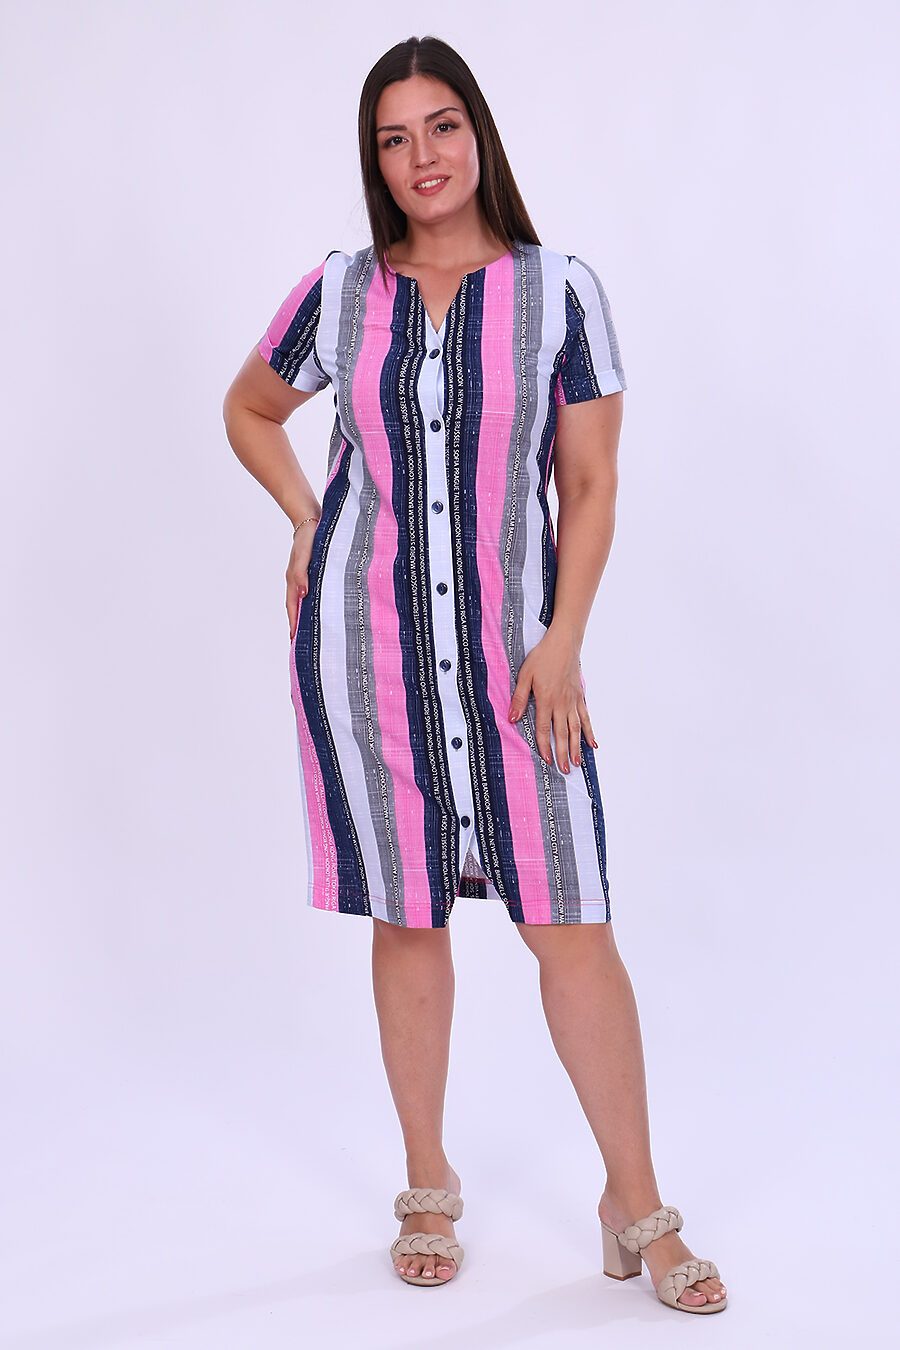 Платье 38148 для женщин НАТАЛИ 796351 купить оптом от производителя. Совместная покупка женской одежды в OptMoyo